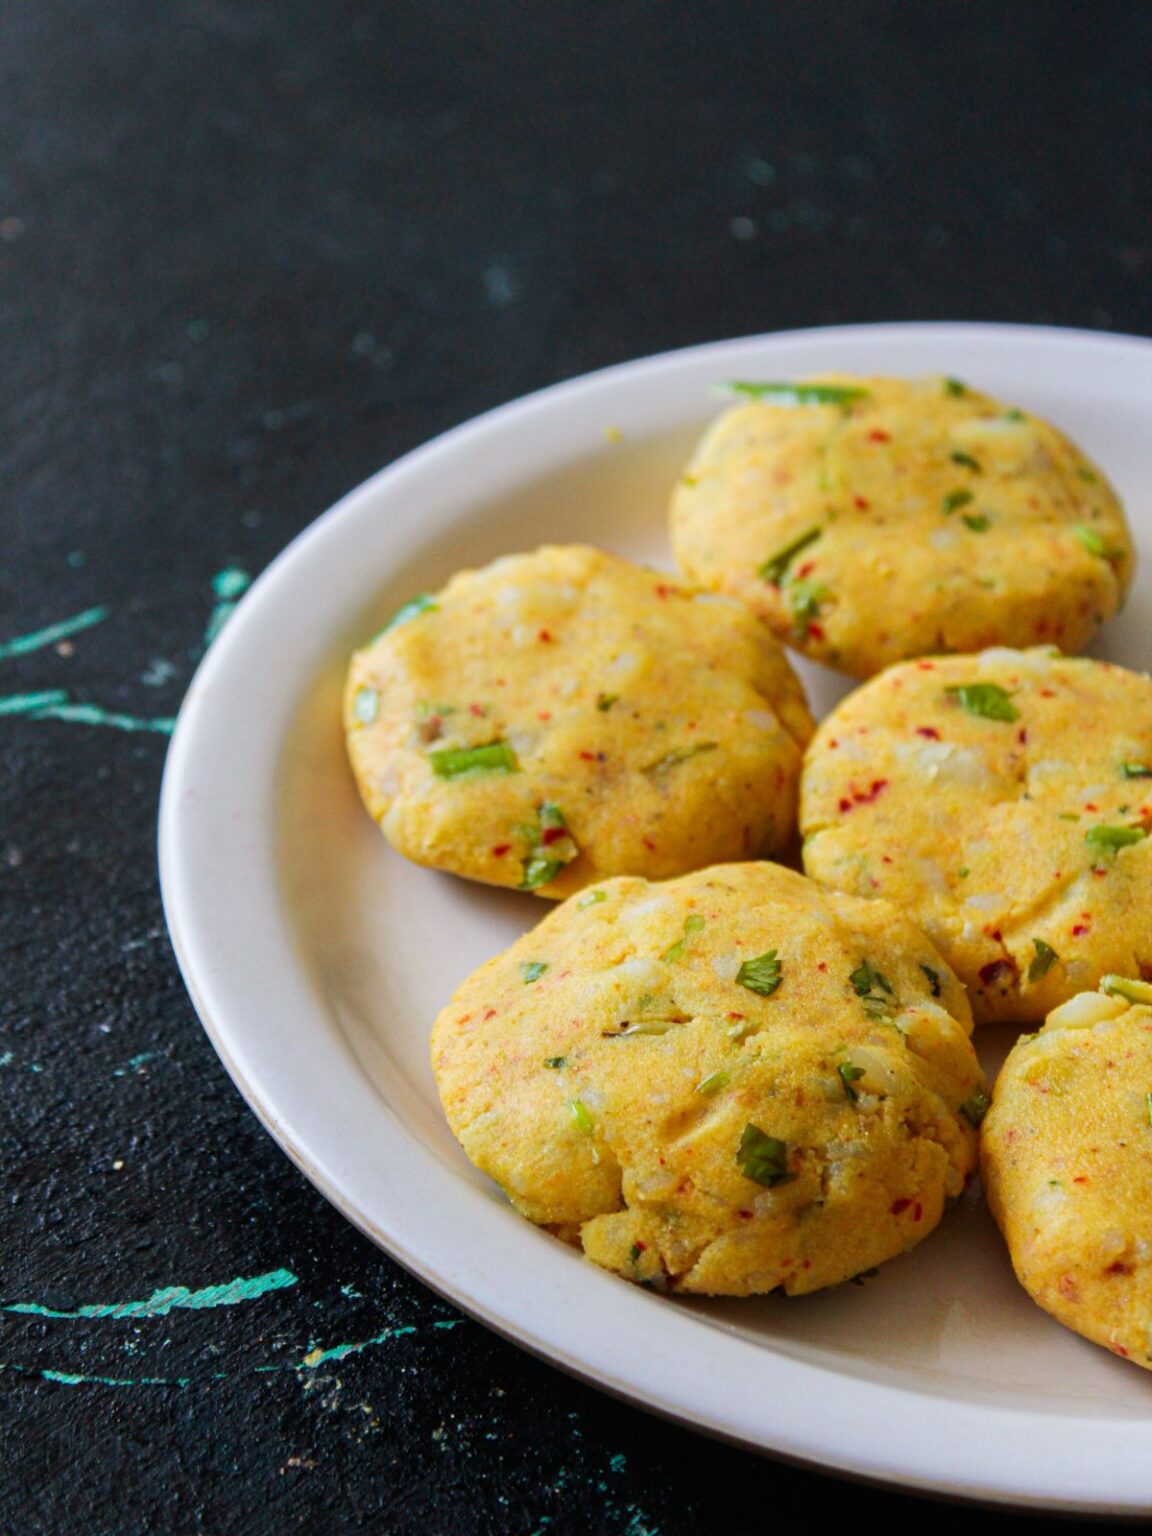 Easy Aloo Tikki Recipe {Indian Potato Patty} - Cooking The Globe